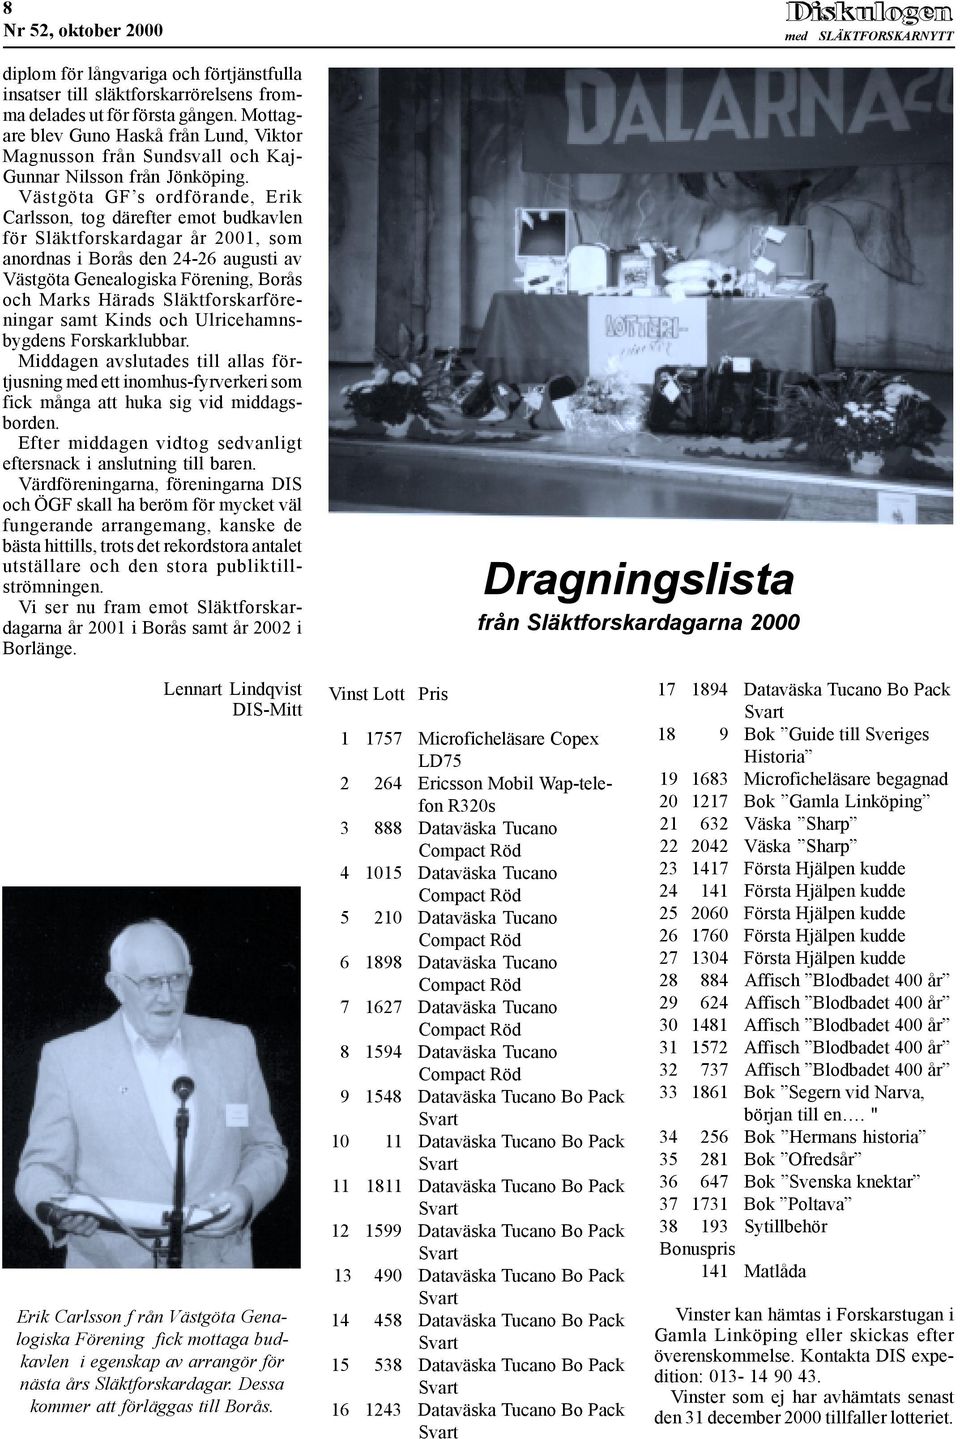 Västgöta GF s ordförande, Erik Carlsson, tog därefter emot budkavlen för Släktforskardagar år 2001, som anordnas i Borås den 24-26 augusti av Västgöta Genealogiska Förening, Borås och Marks Härads